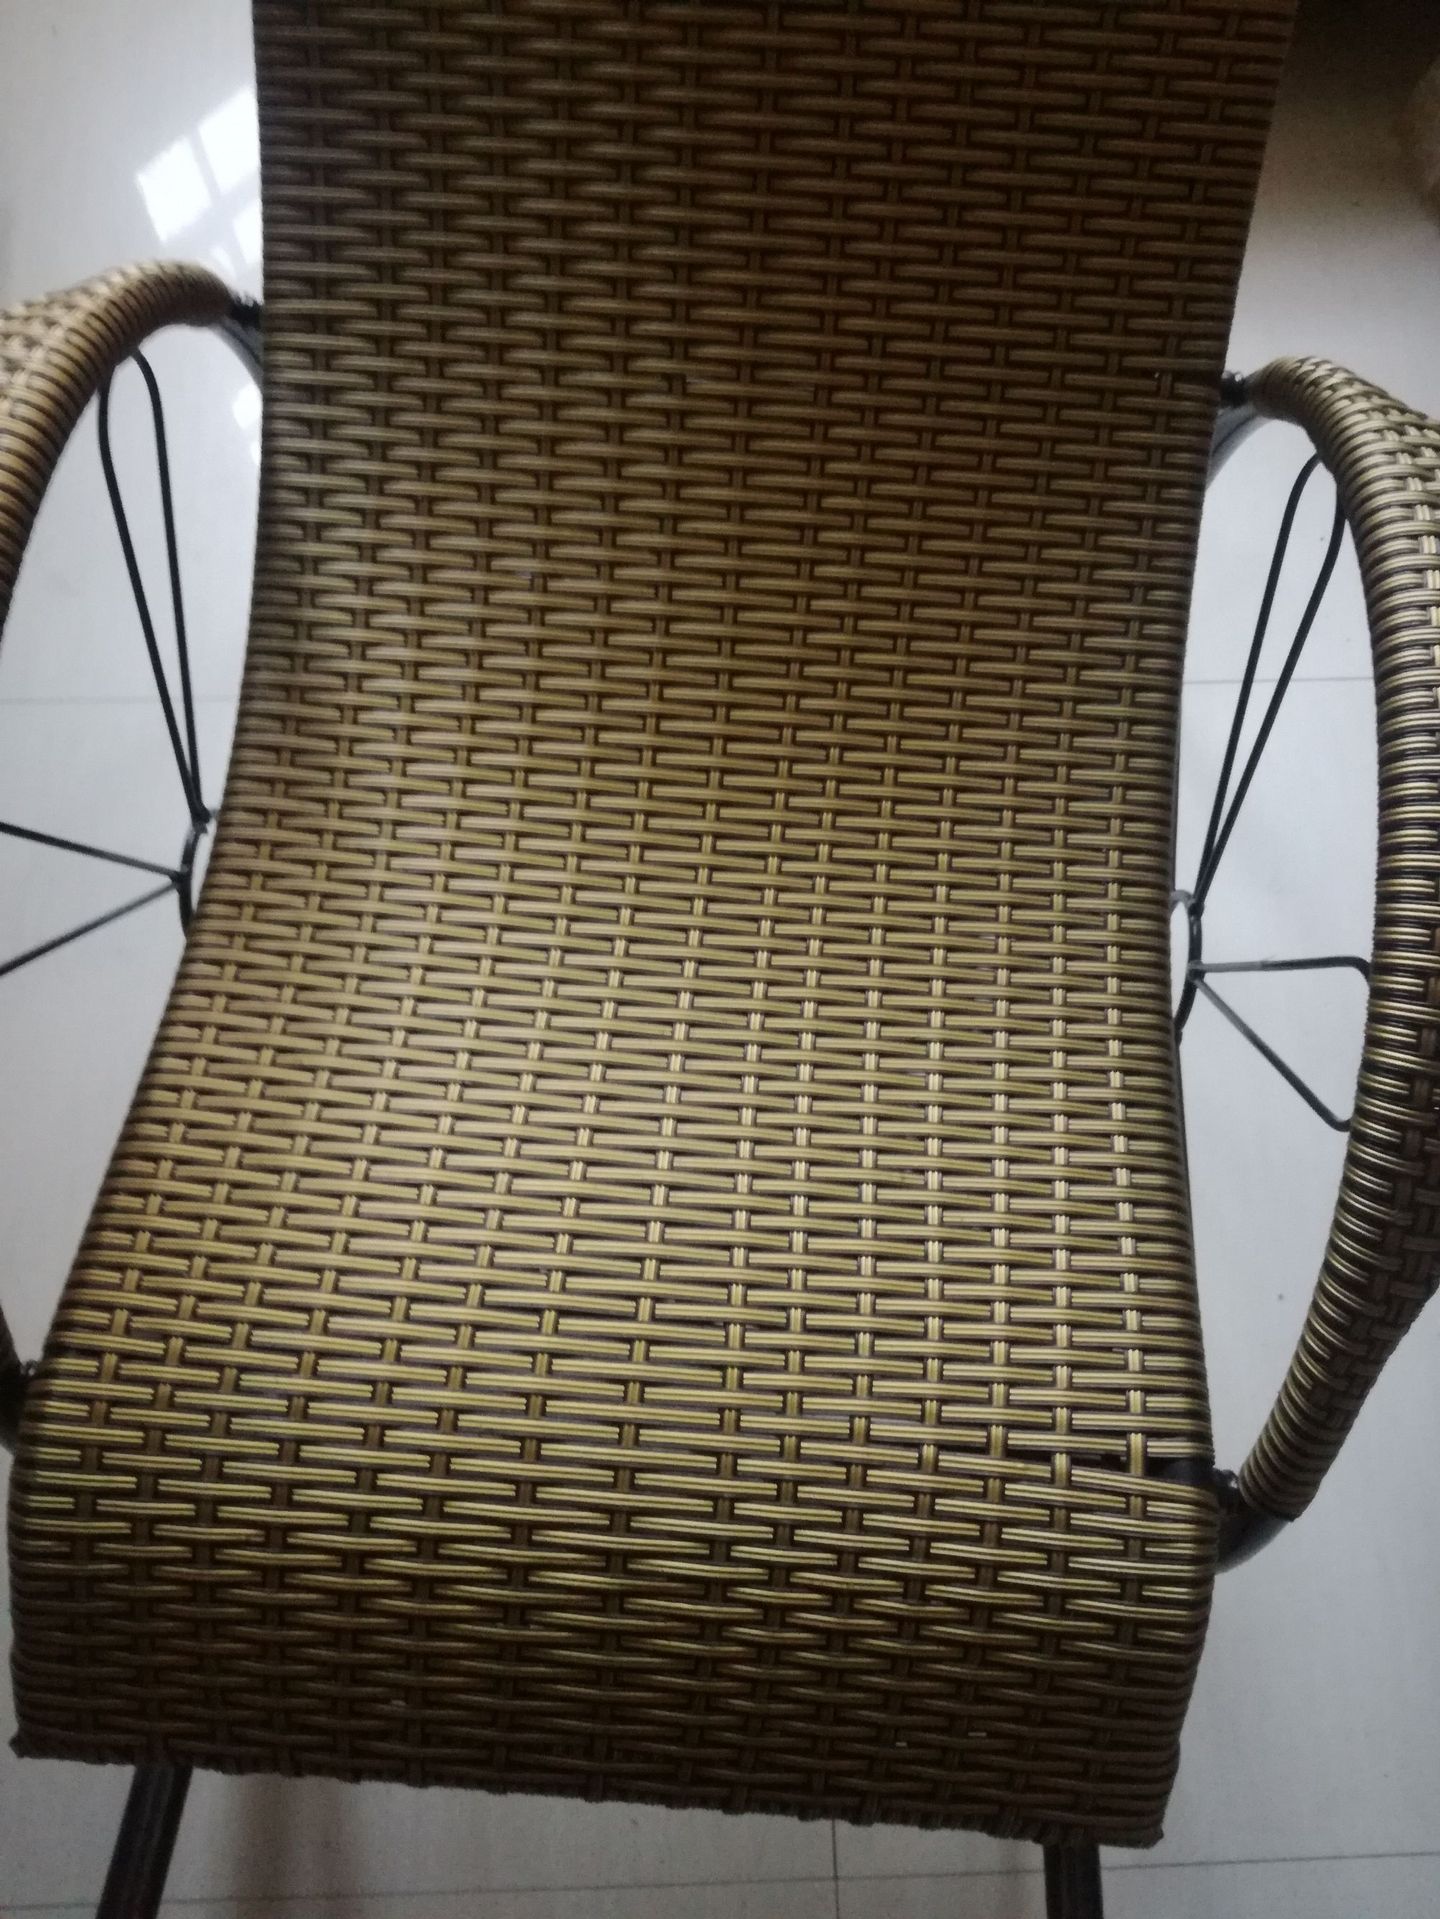 厂家直销双轮摇椅 逍遥椅  藤编躺椅 摇摇椅 质量可靠一件代发示例图3